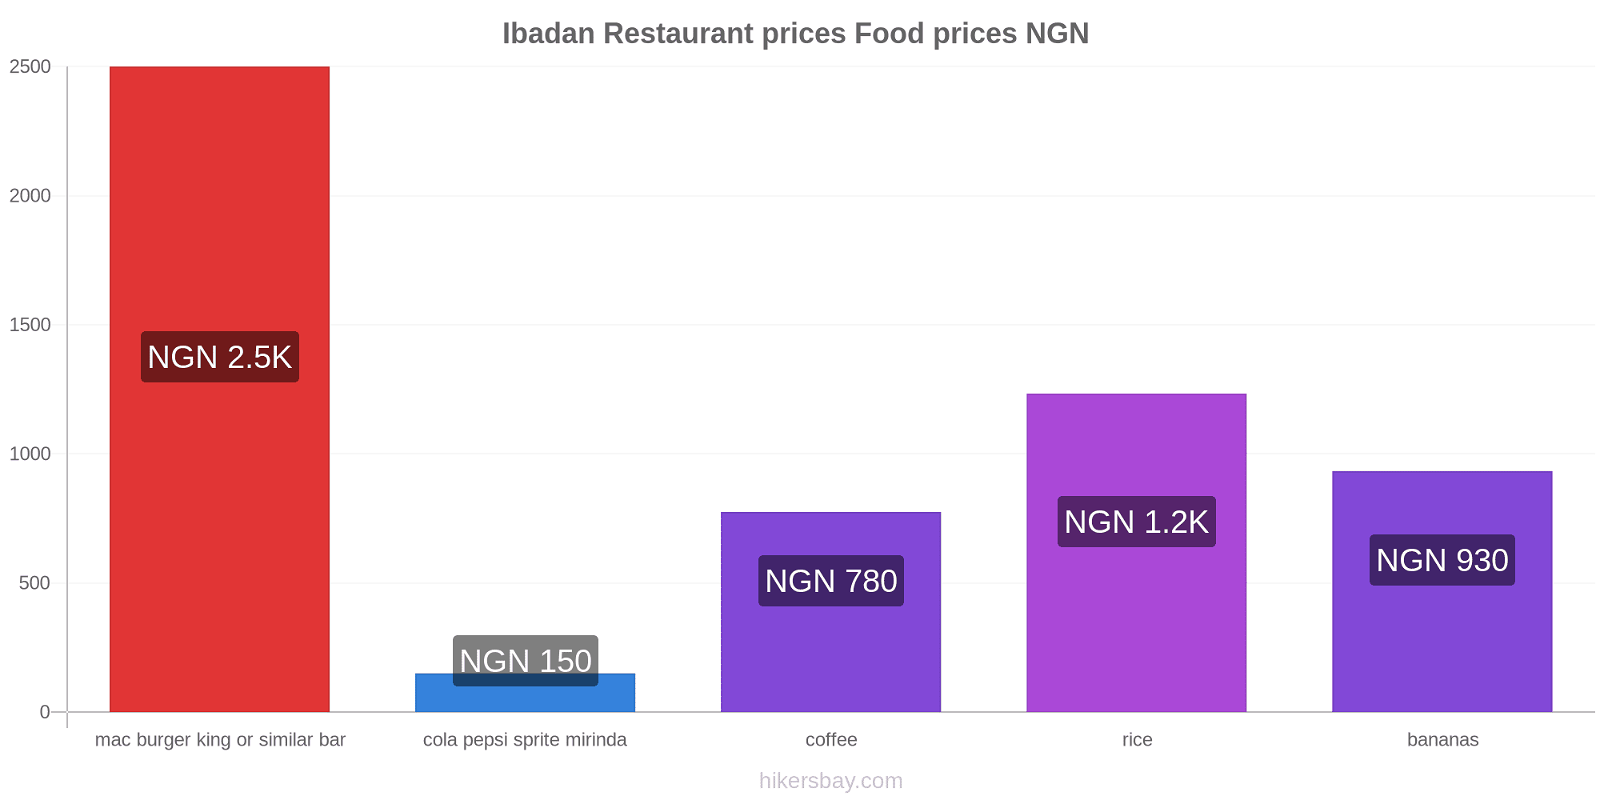 Ibadan price changes hikersbay.com